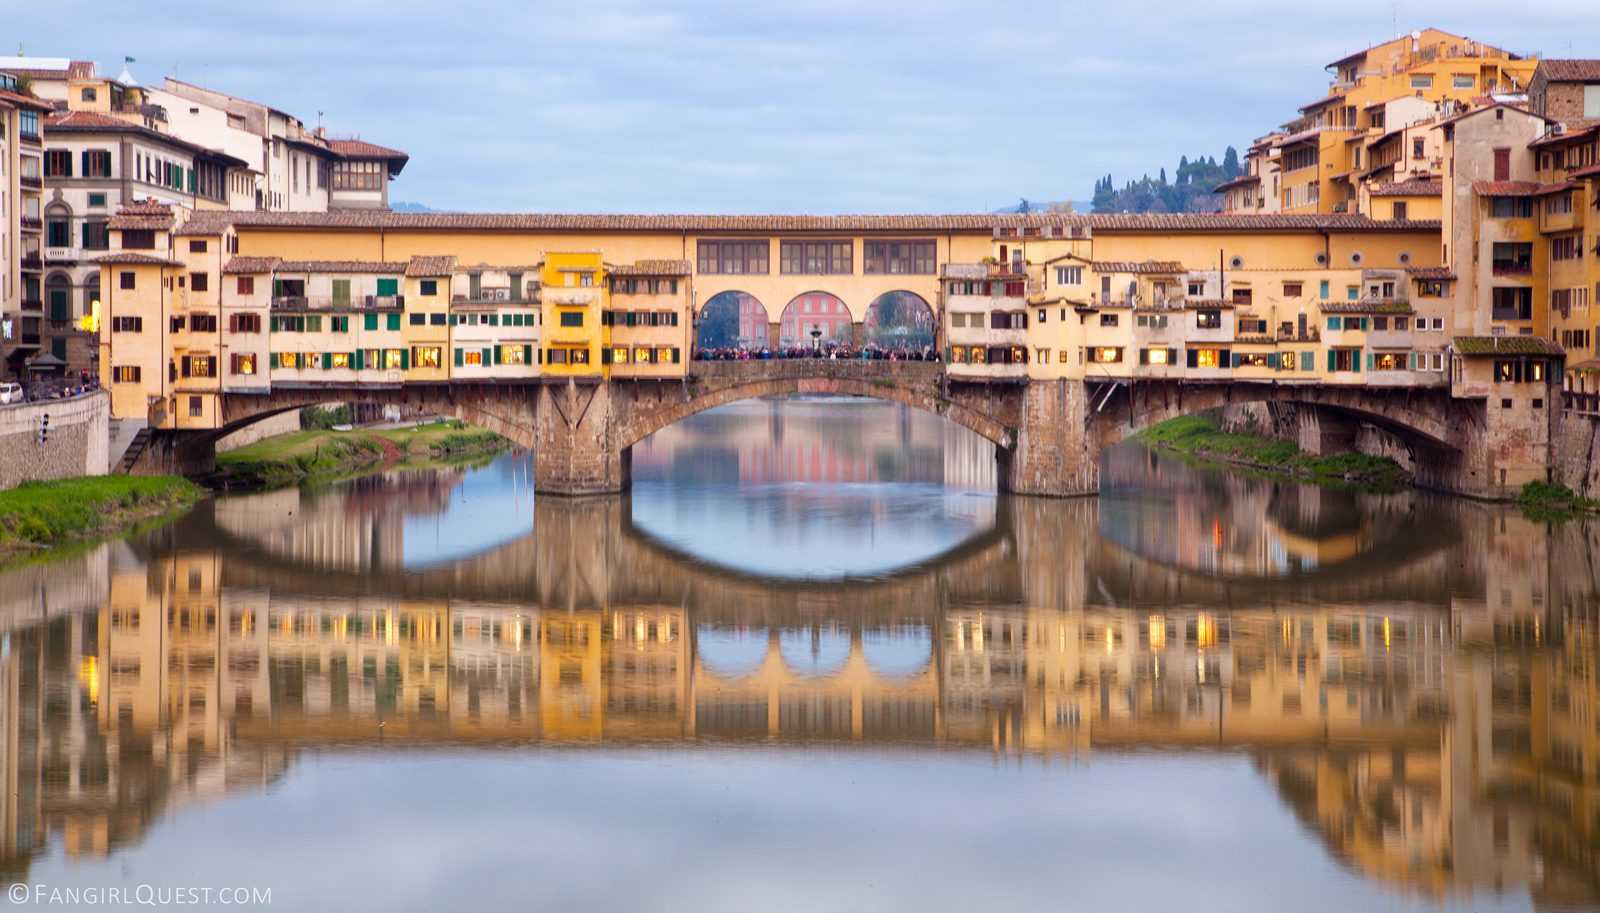 Понте веккьо: «золотой» мост флоренции